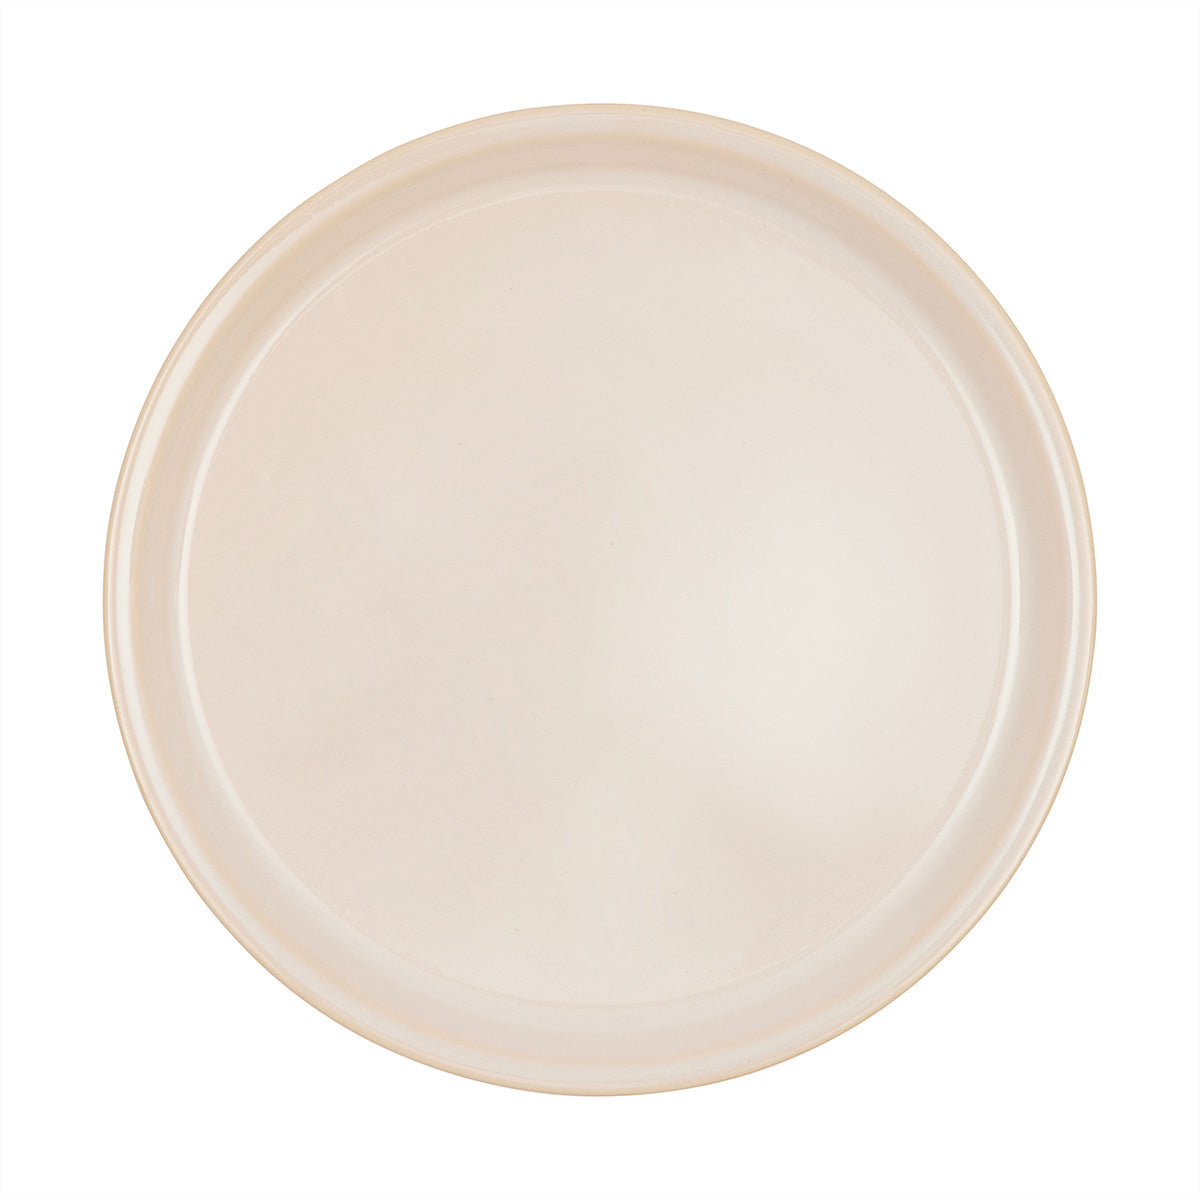 OYOY LIVING Yuka Dinner Plate - Pack of 2 Plate 102 Offwhite